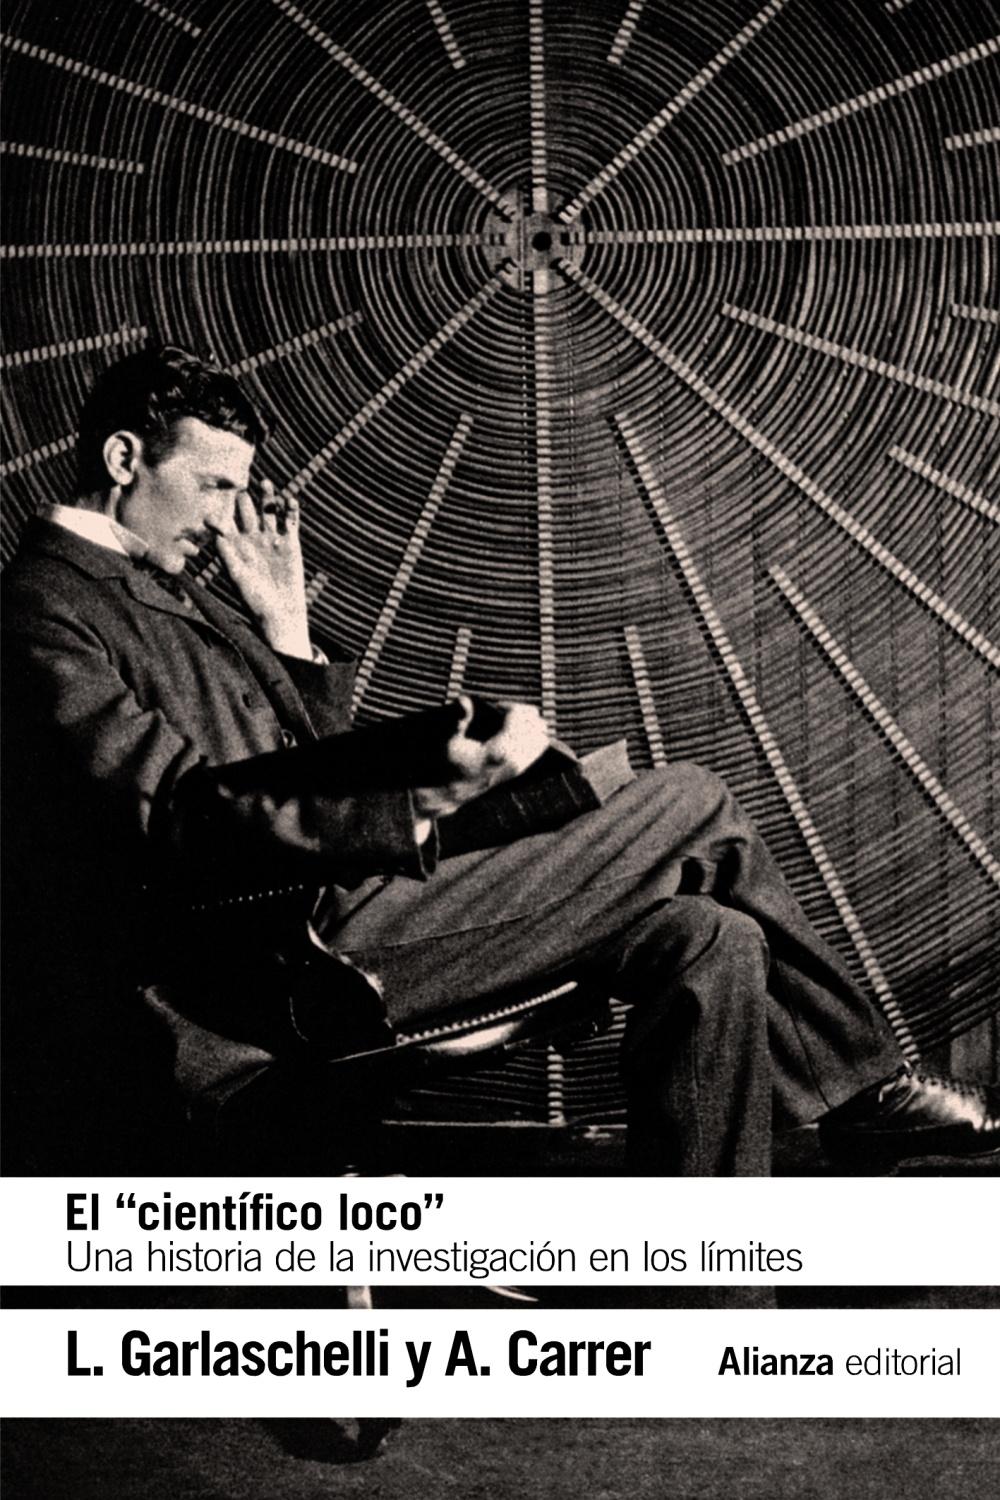 El  " científico loco " "Una historia de la investigación en los límites". 